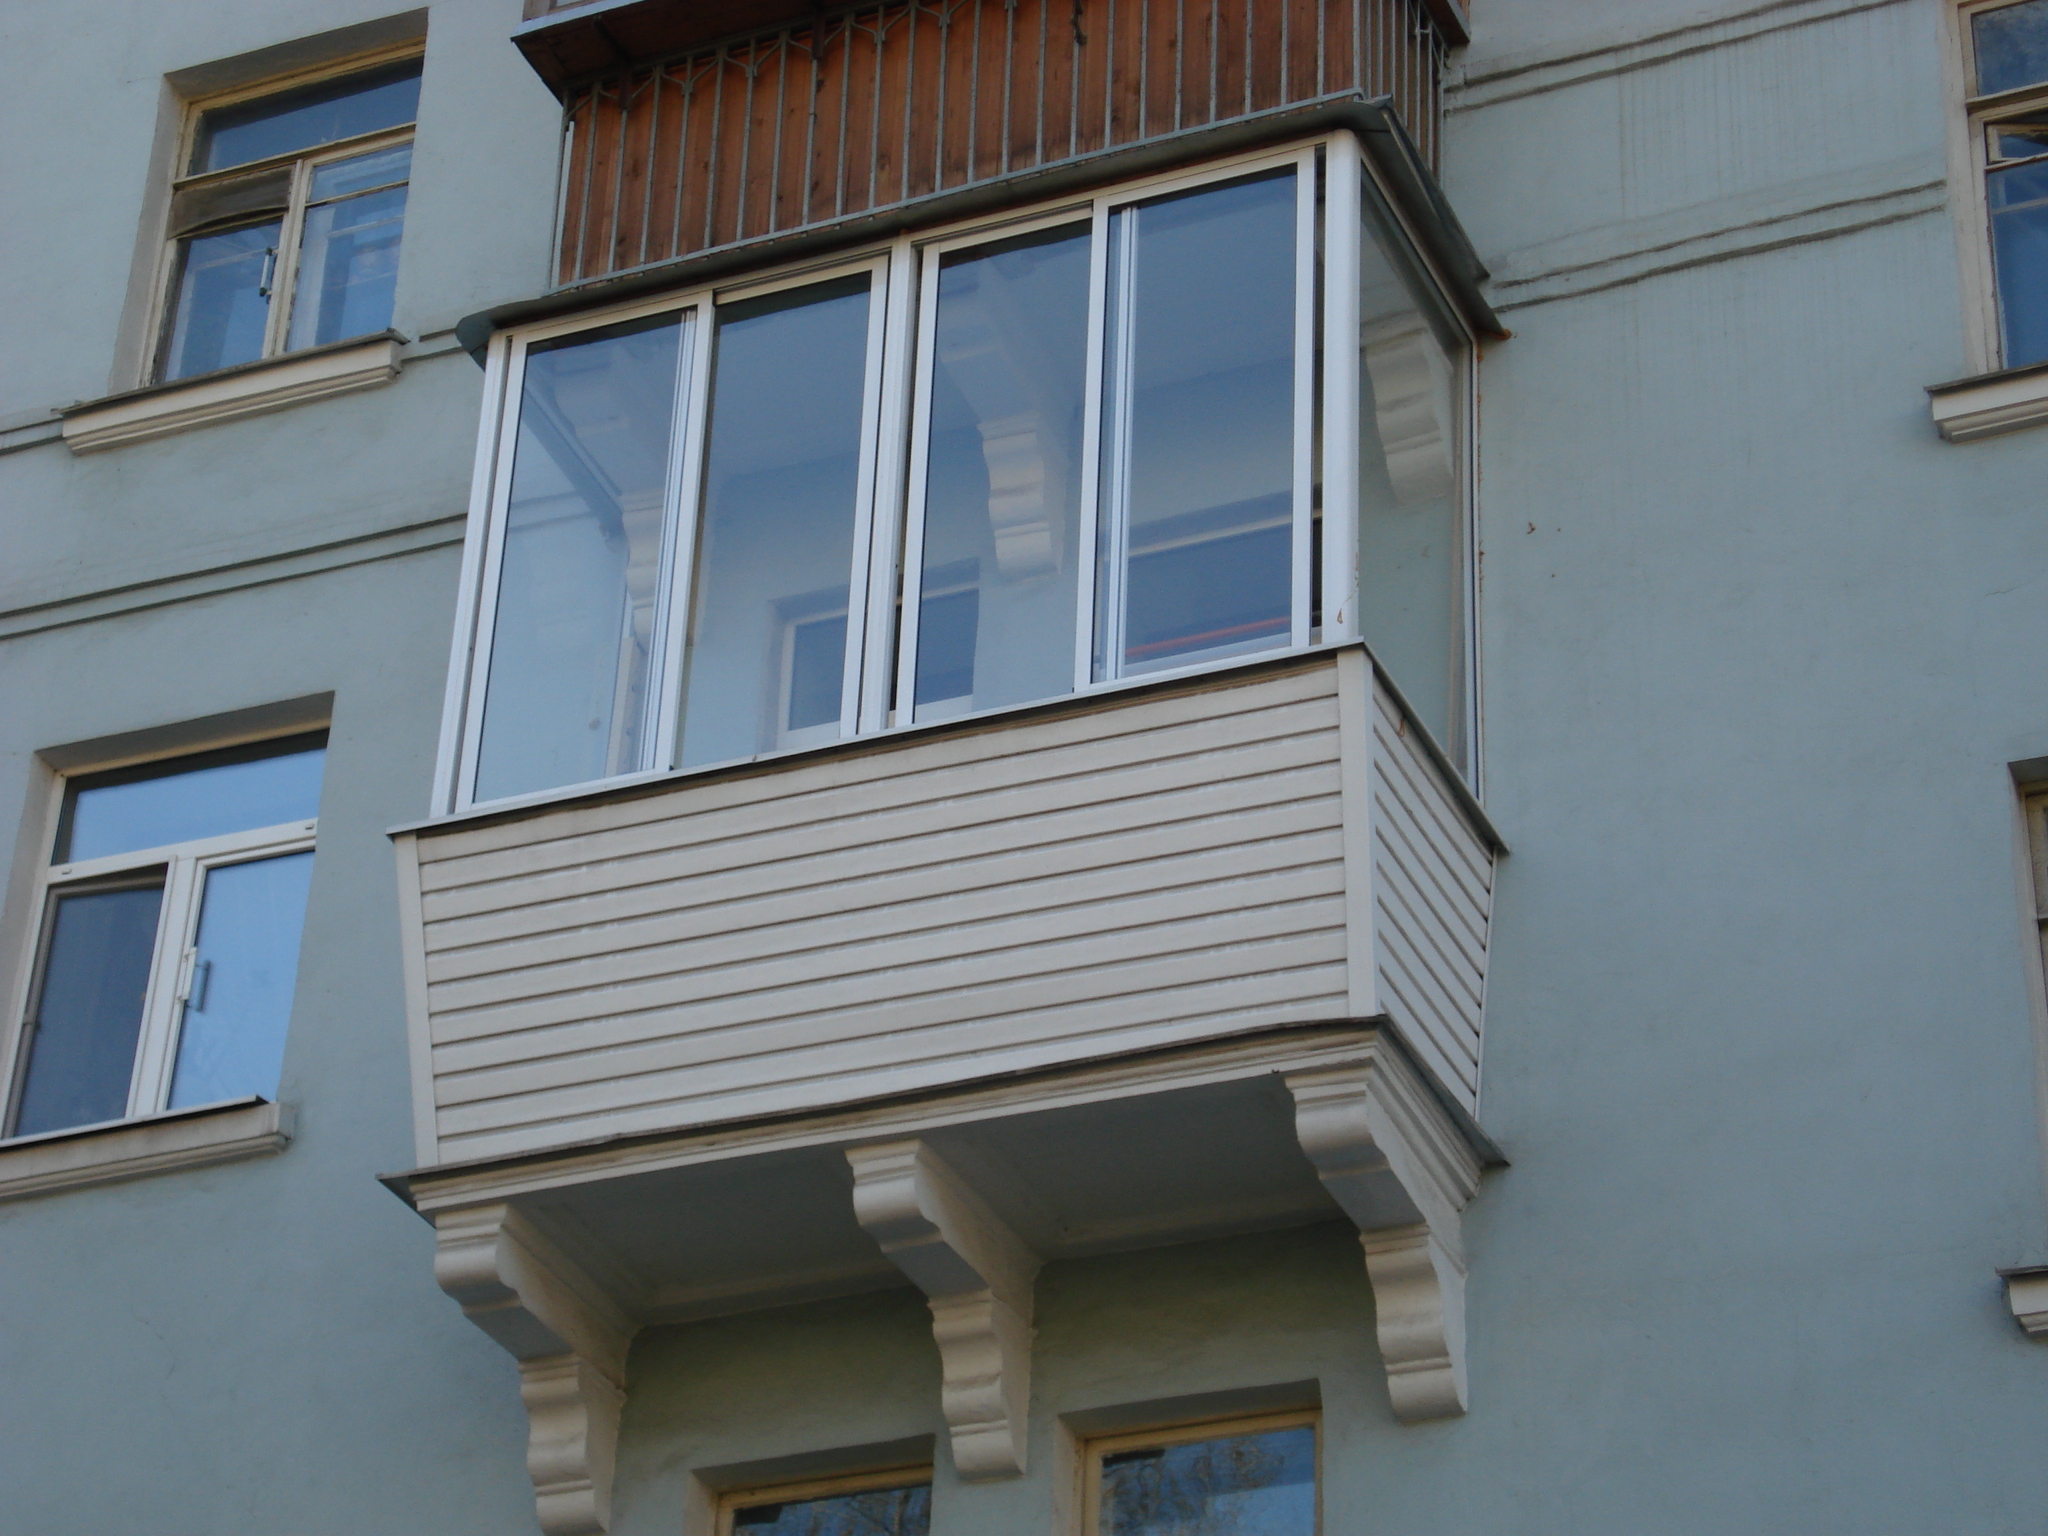 Остекление балконов цена остекление балконов тут. Остекление балкона в сталинке. Балкон хрущевка остекление. Остекление балконов в хрущевках. Внешняя отделка балкона.